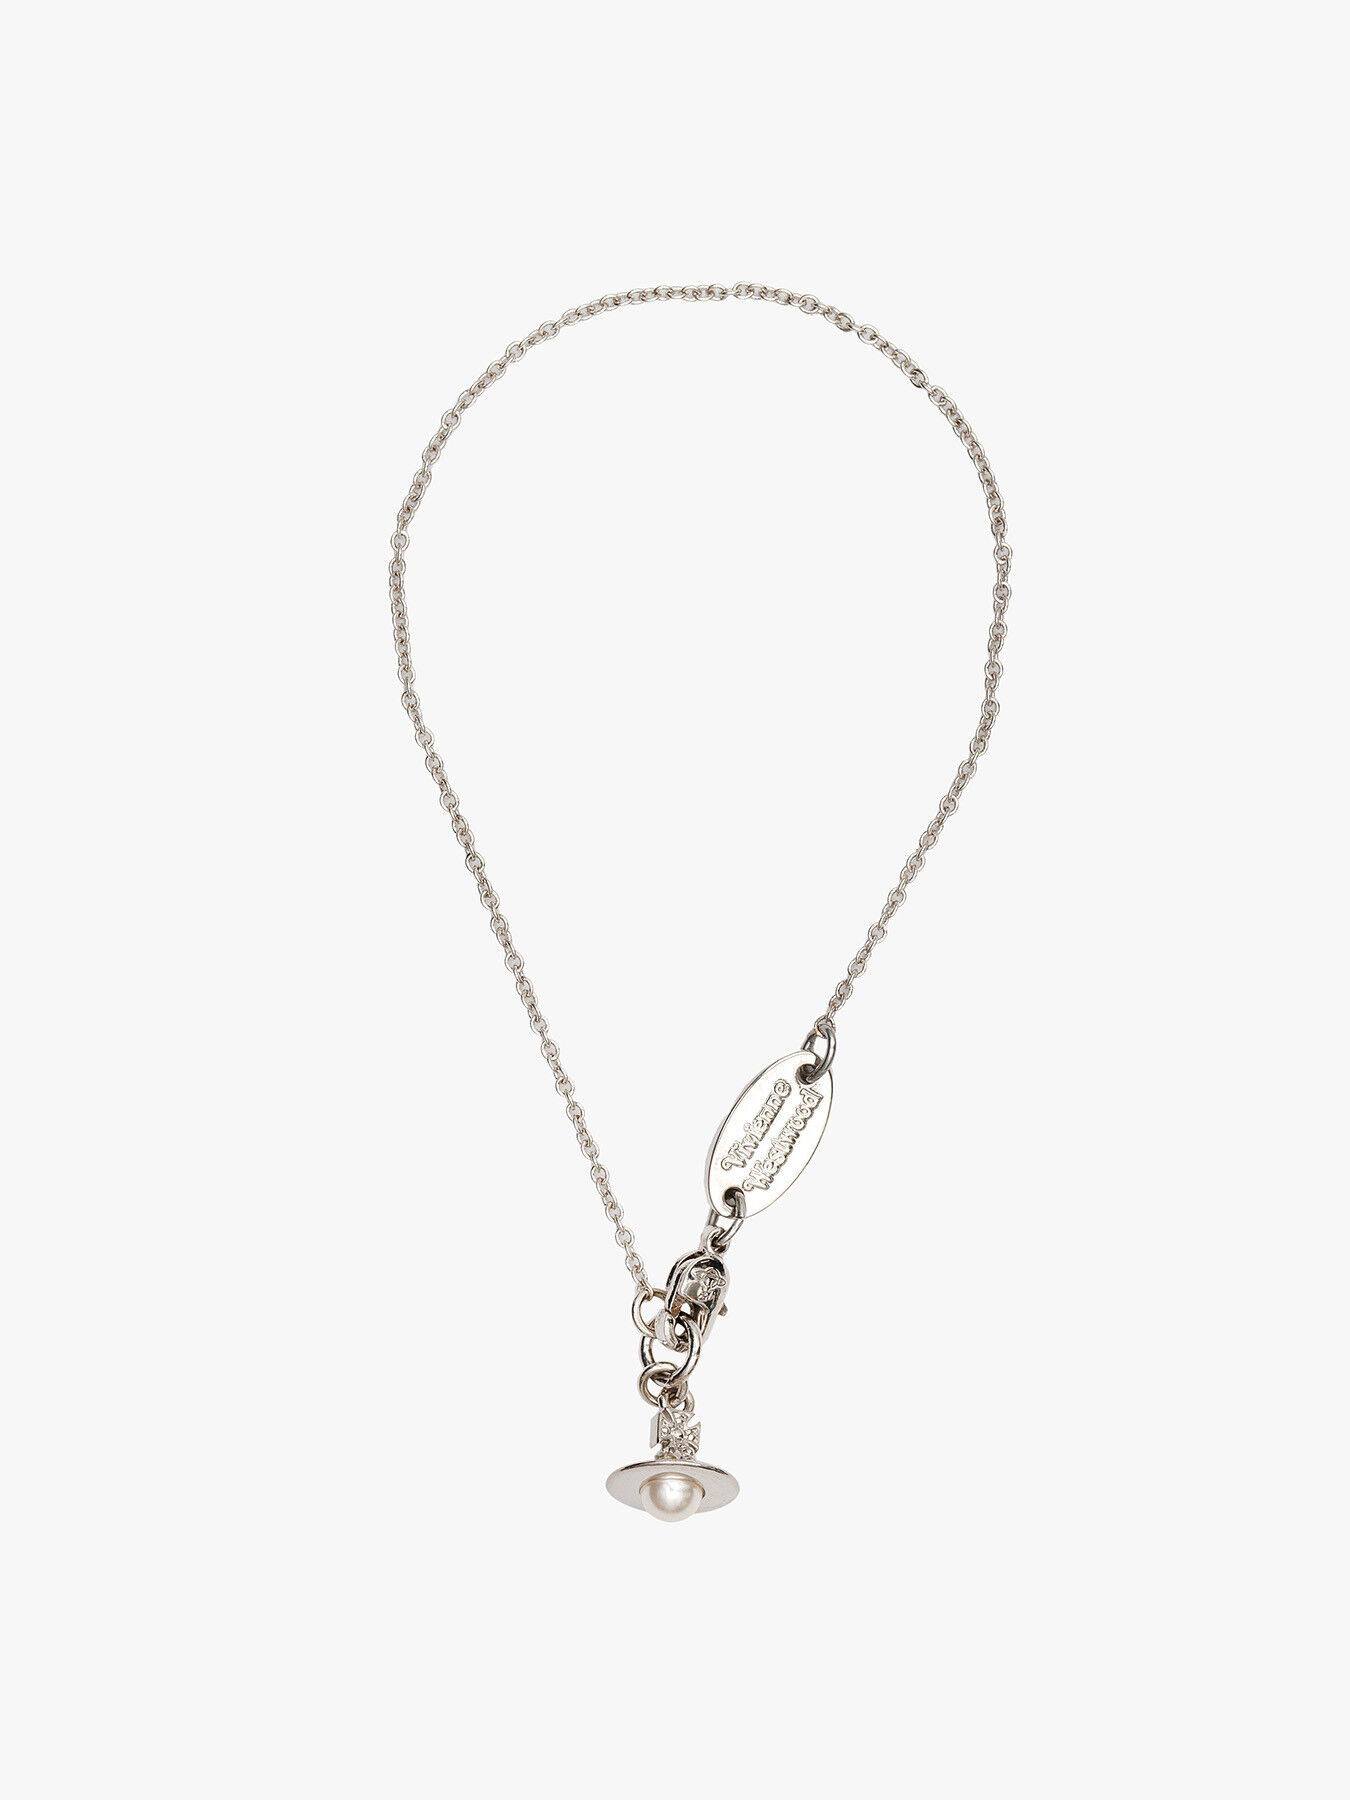 Vivienne Westwood Jewelry for Women - Shop on FARFETCH